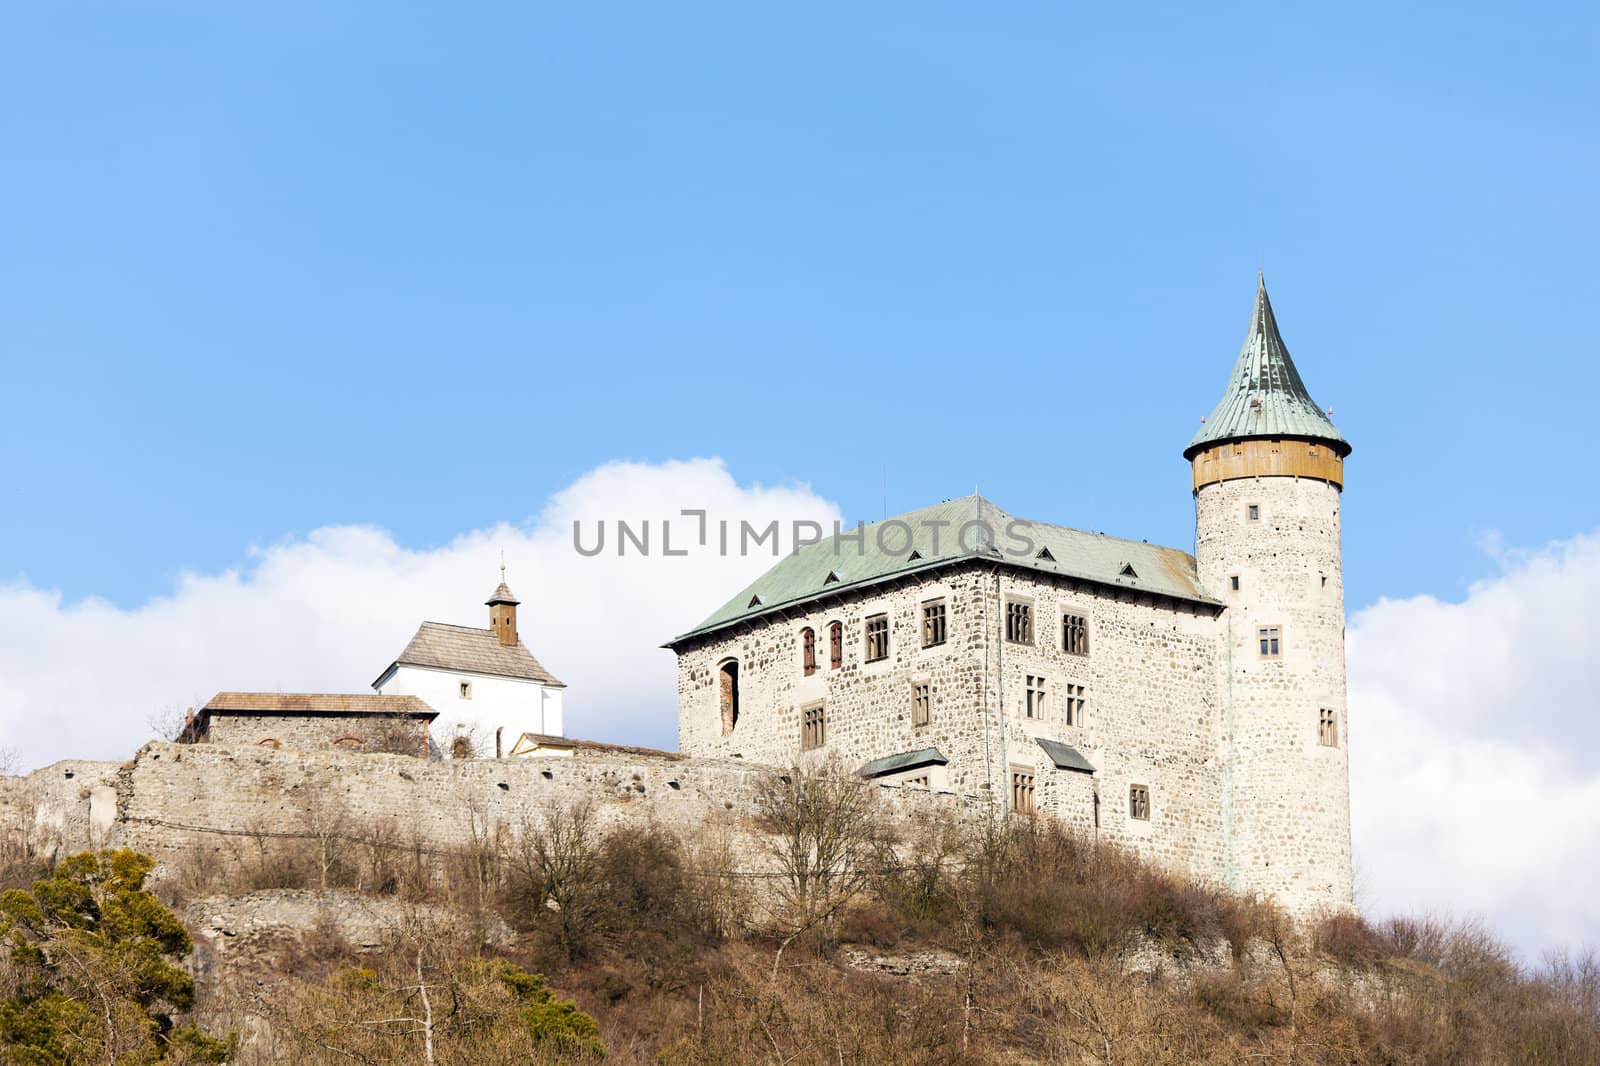 Kuneticka hora Castle, Czech Republic by phbcz